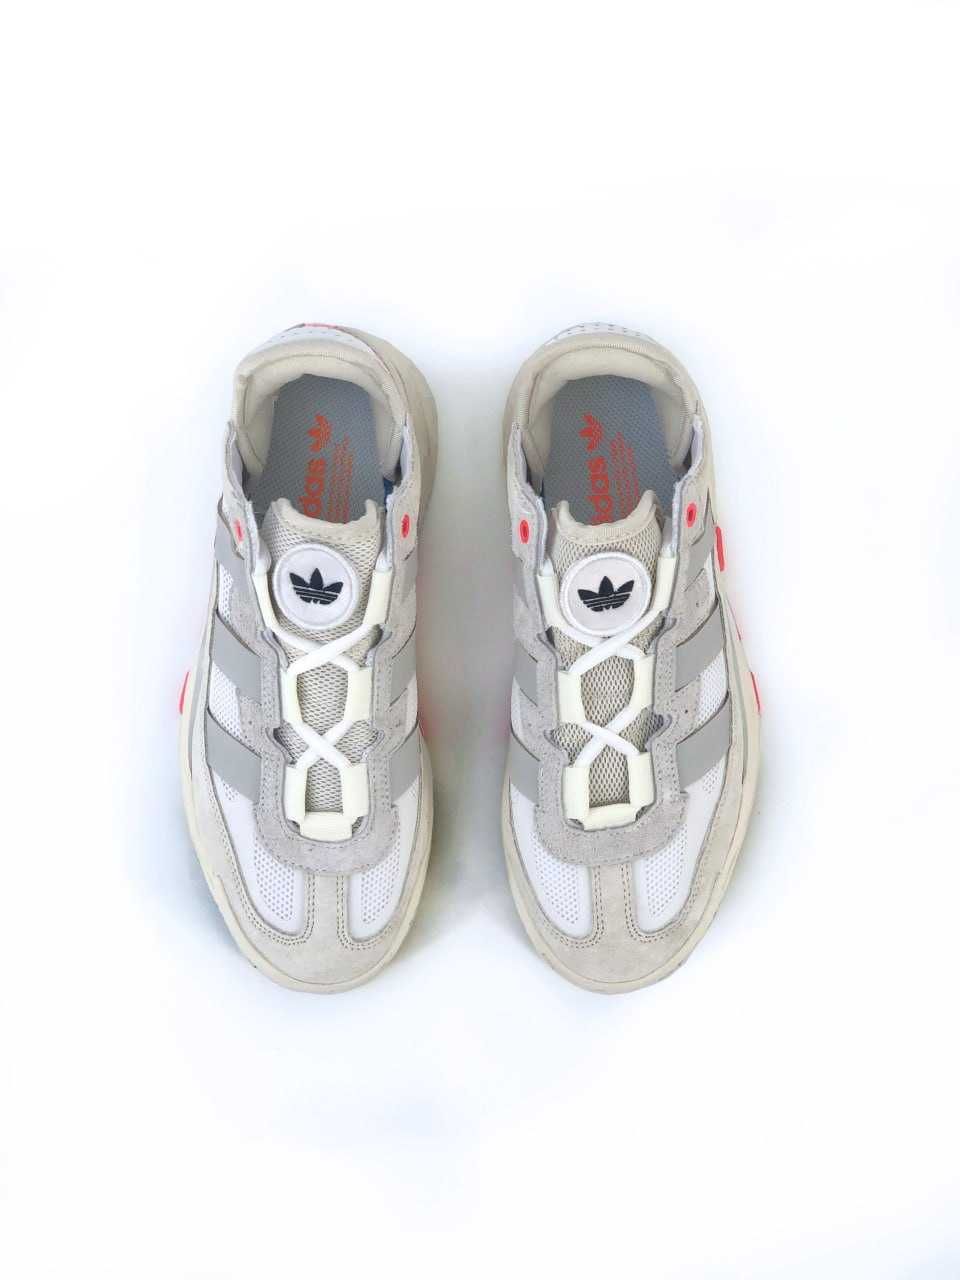 Чоловічі кросівки Adidas Lightstrike білий з сірим 7634 СУПЕР